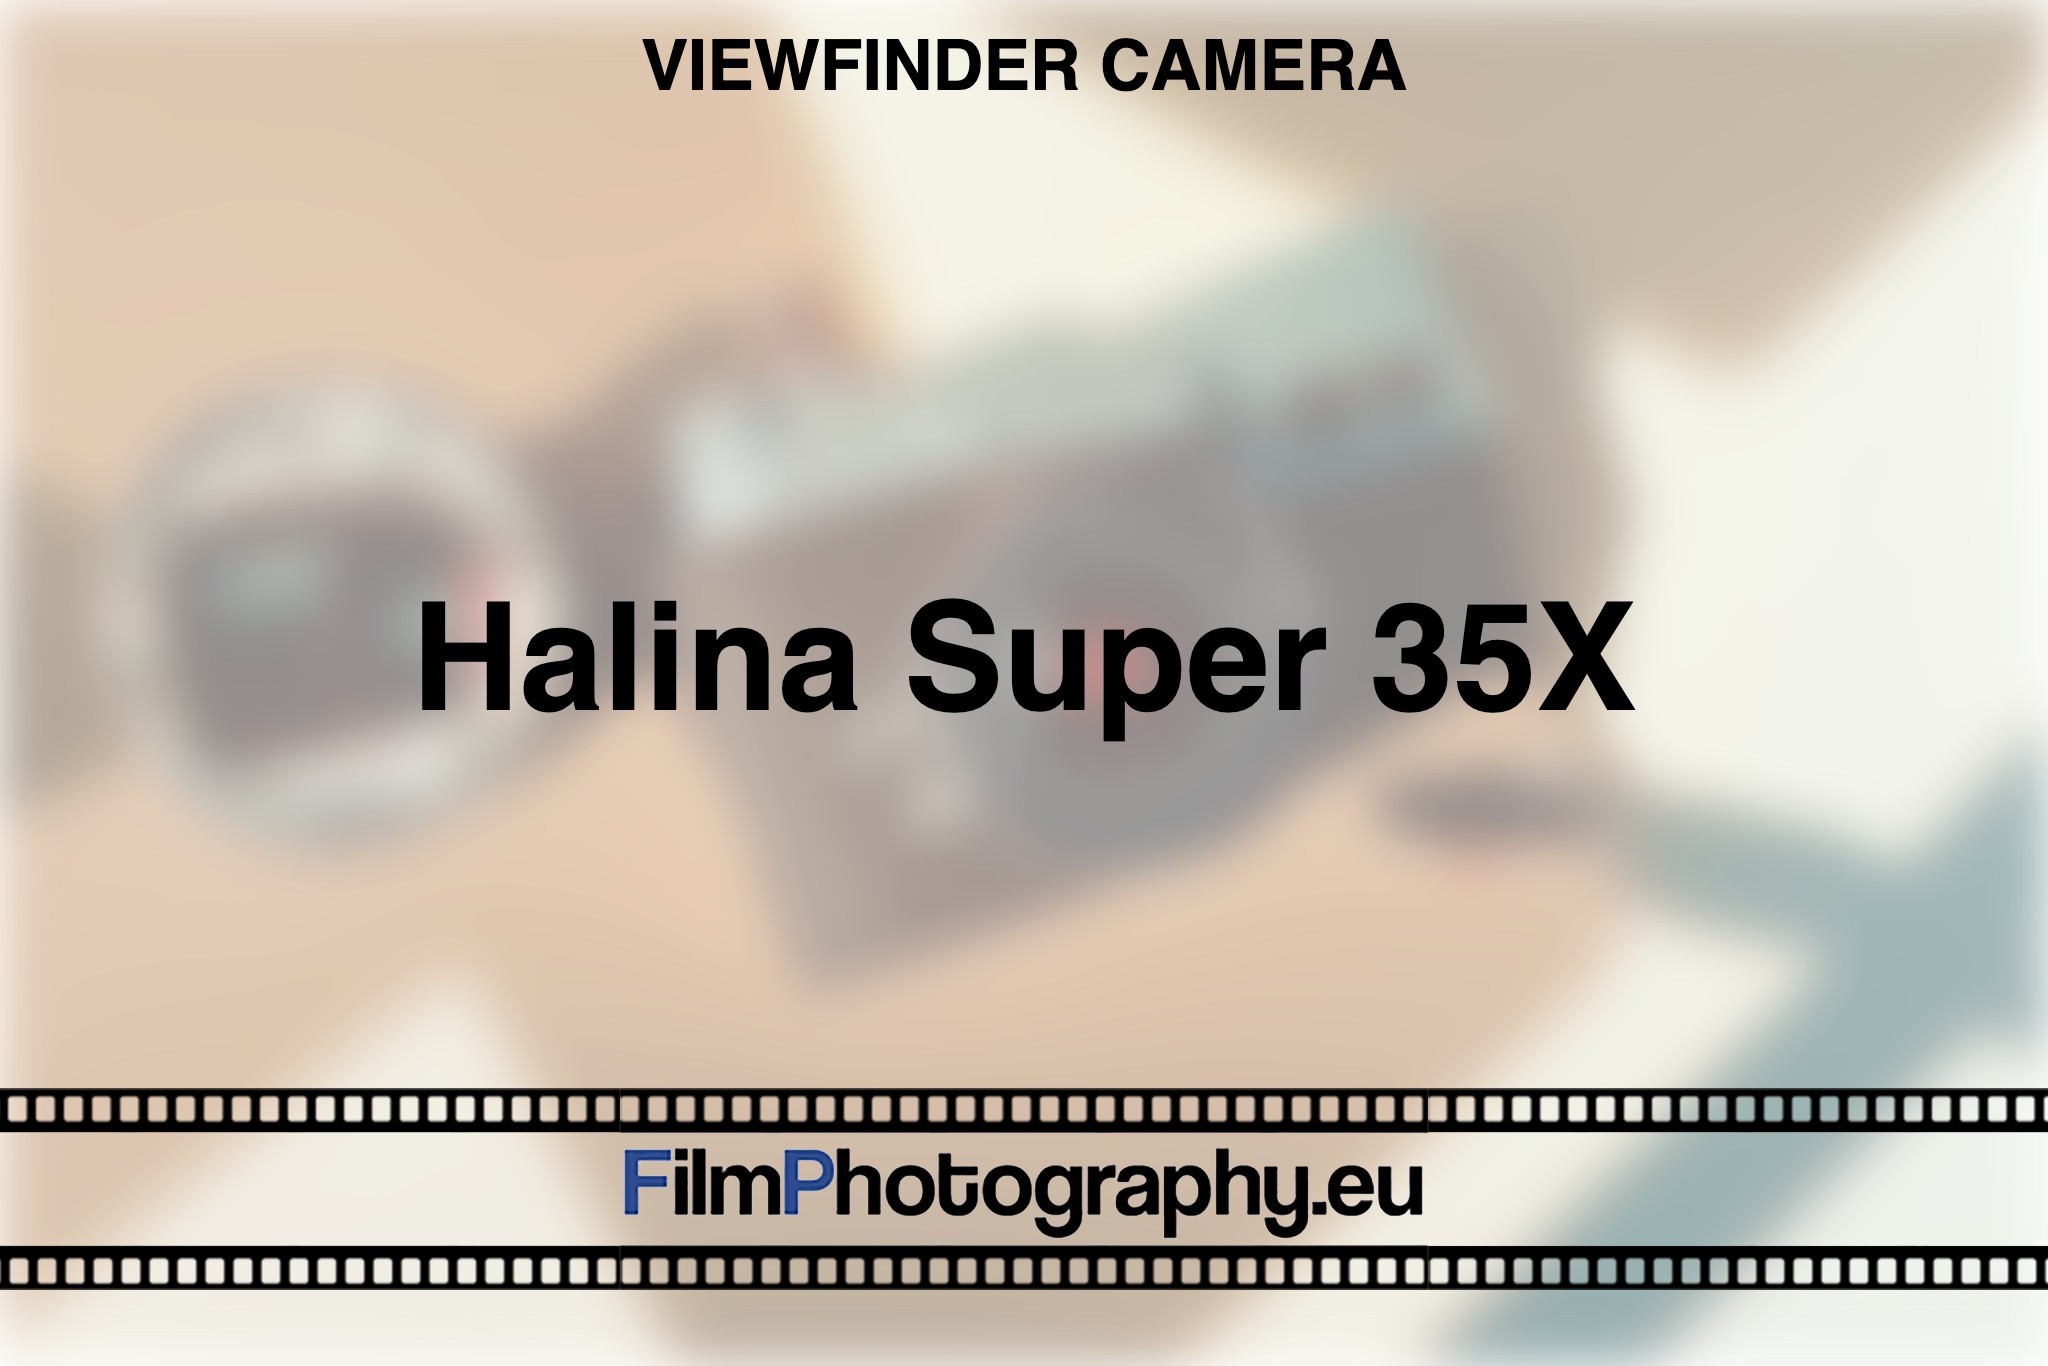 halina-super-35x-viewfinder-camera-bnv